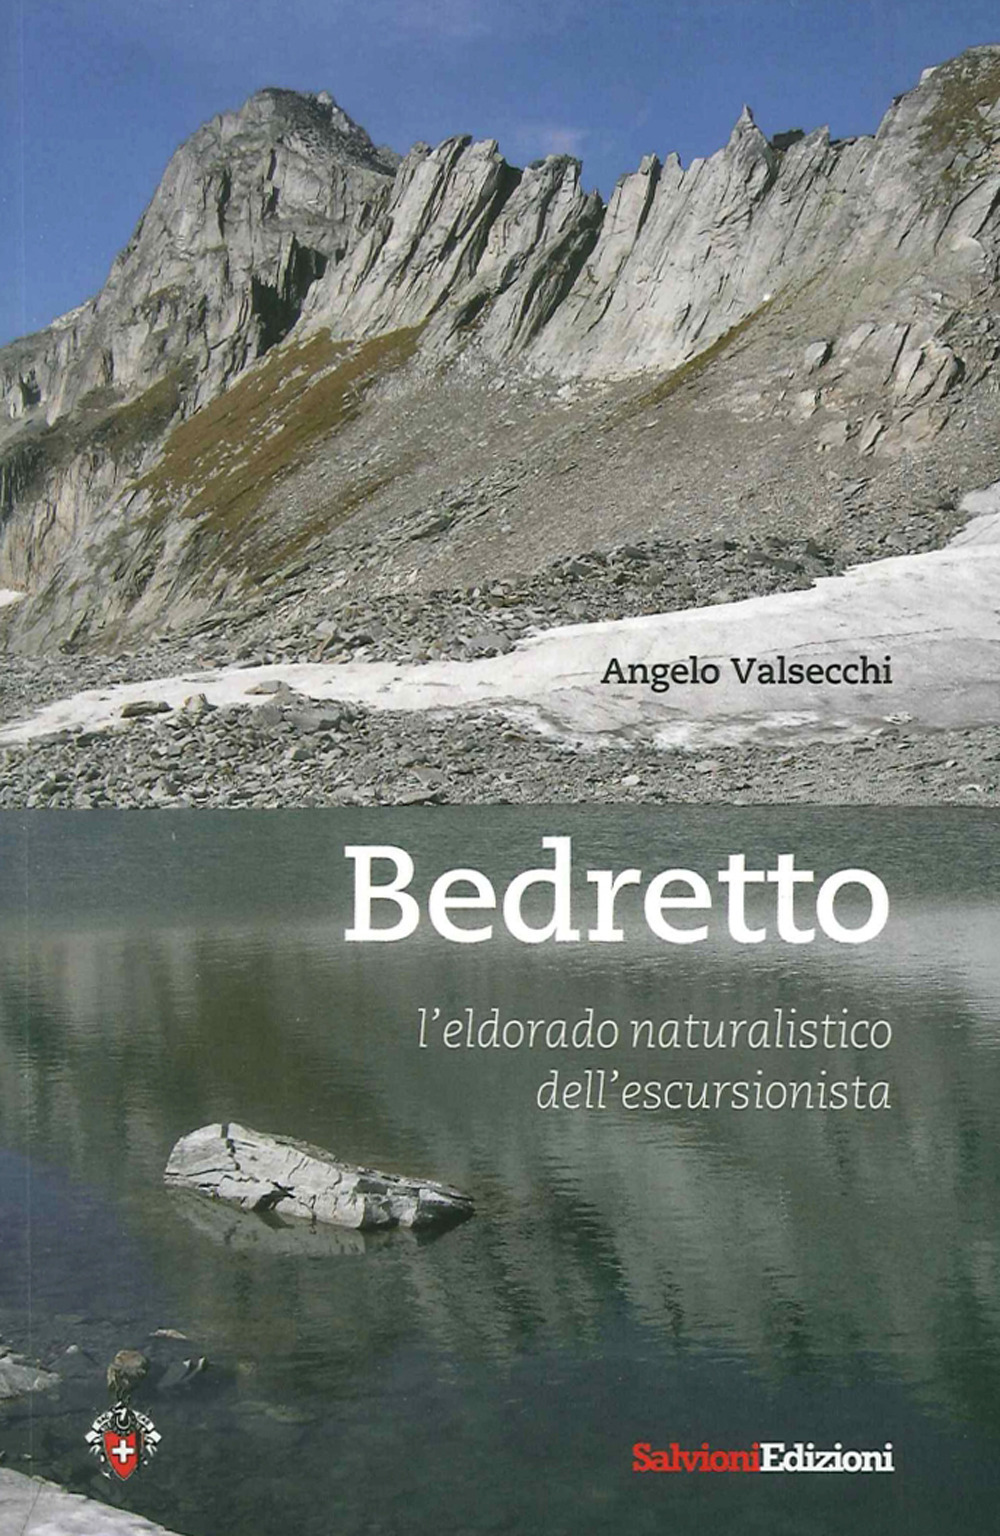 Image of Bedretto. L'eldorado naturalistico dell'escursionista